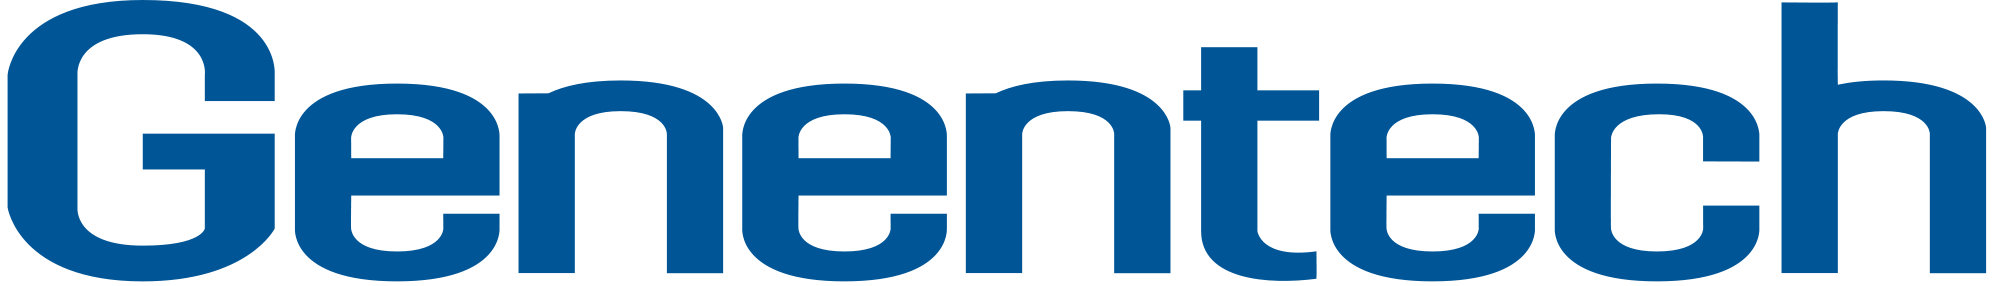 Genentech Logo - Genentech.svg